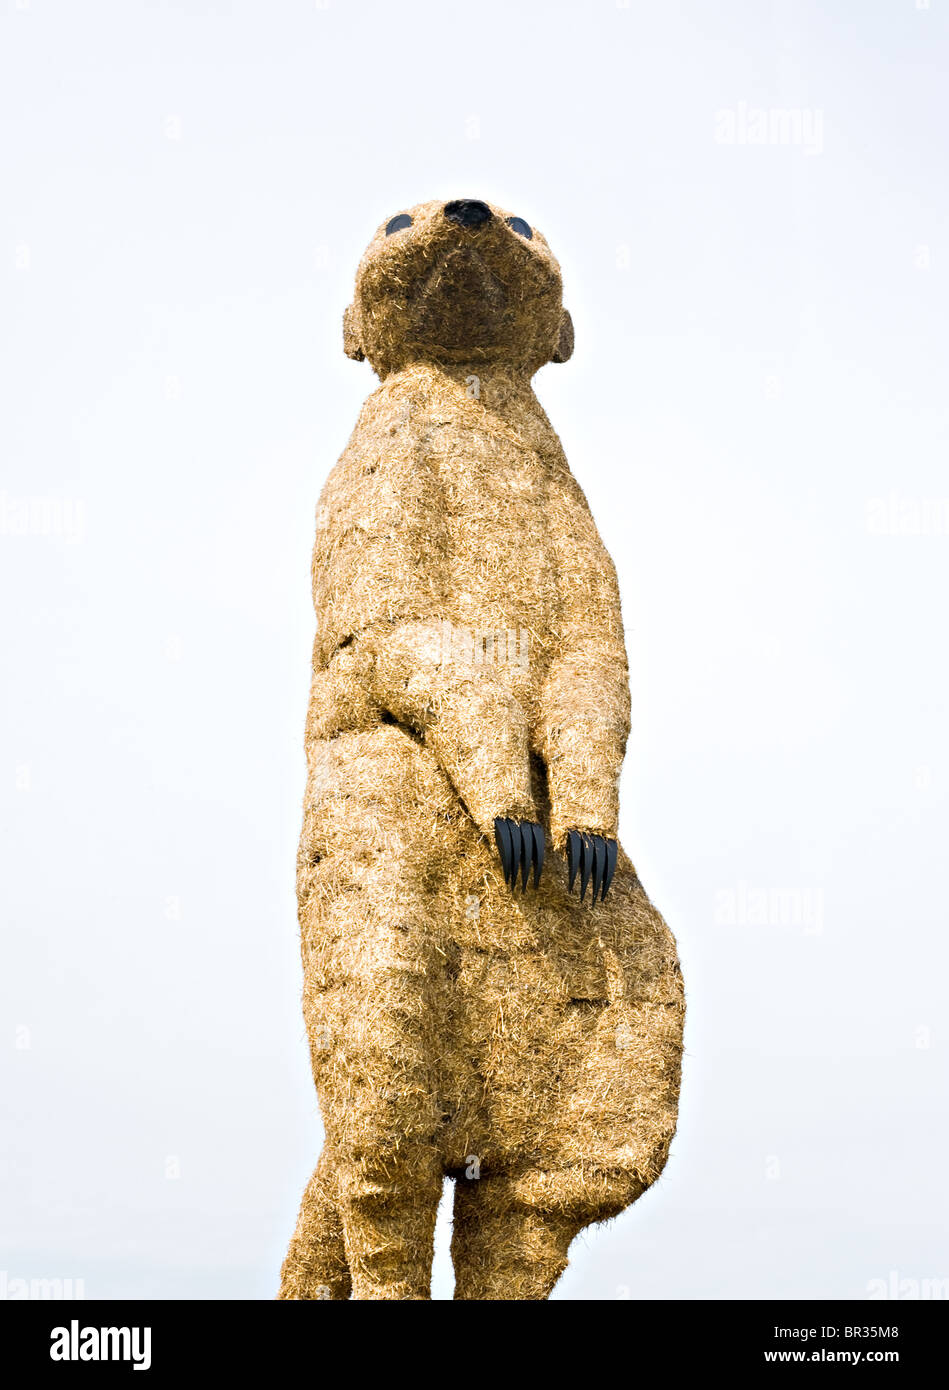 Statue d'un Meerkat Sculpture à Snugburys Glacier près de London Cheshire England Royaume-Uni UK Banque D'Images